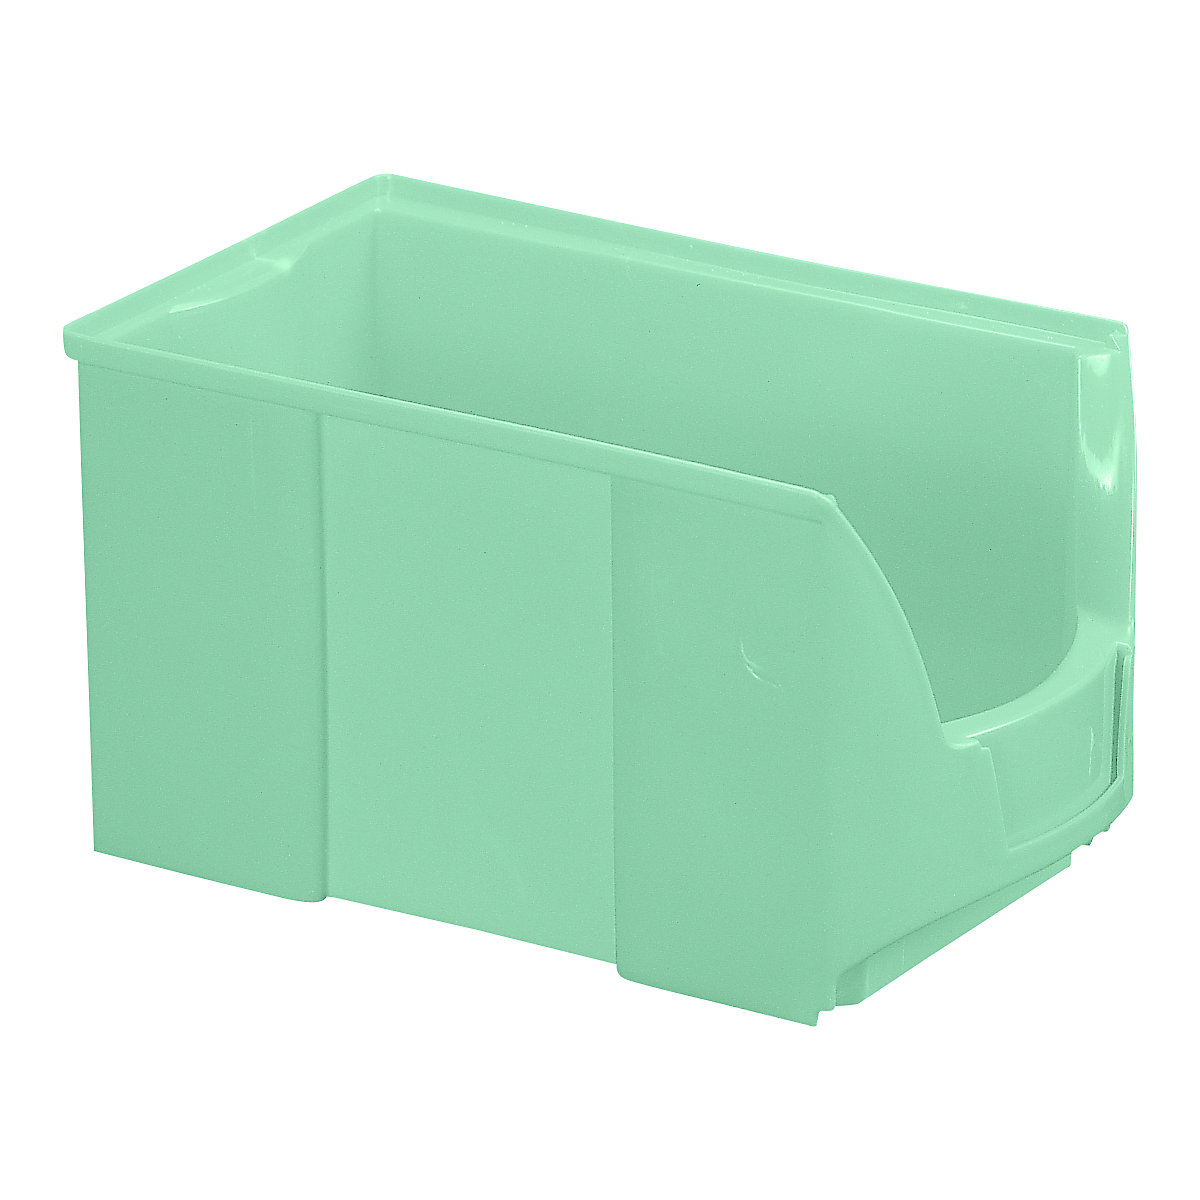 FUTURA-Sichtlagerkasten aus Polyethylen, LxBxH 360 x 208 x 201 mm, VE 8 Stk, grün-17